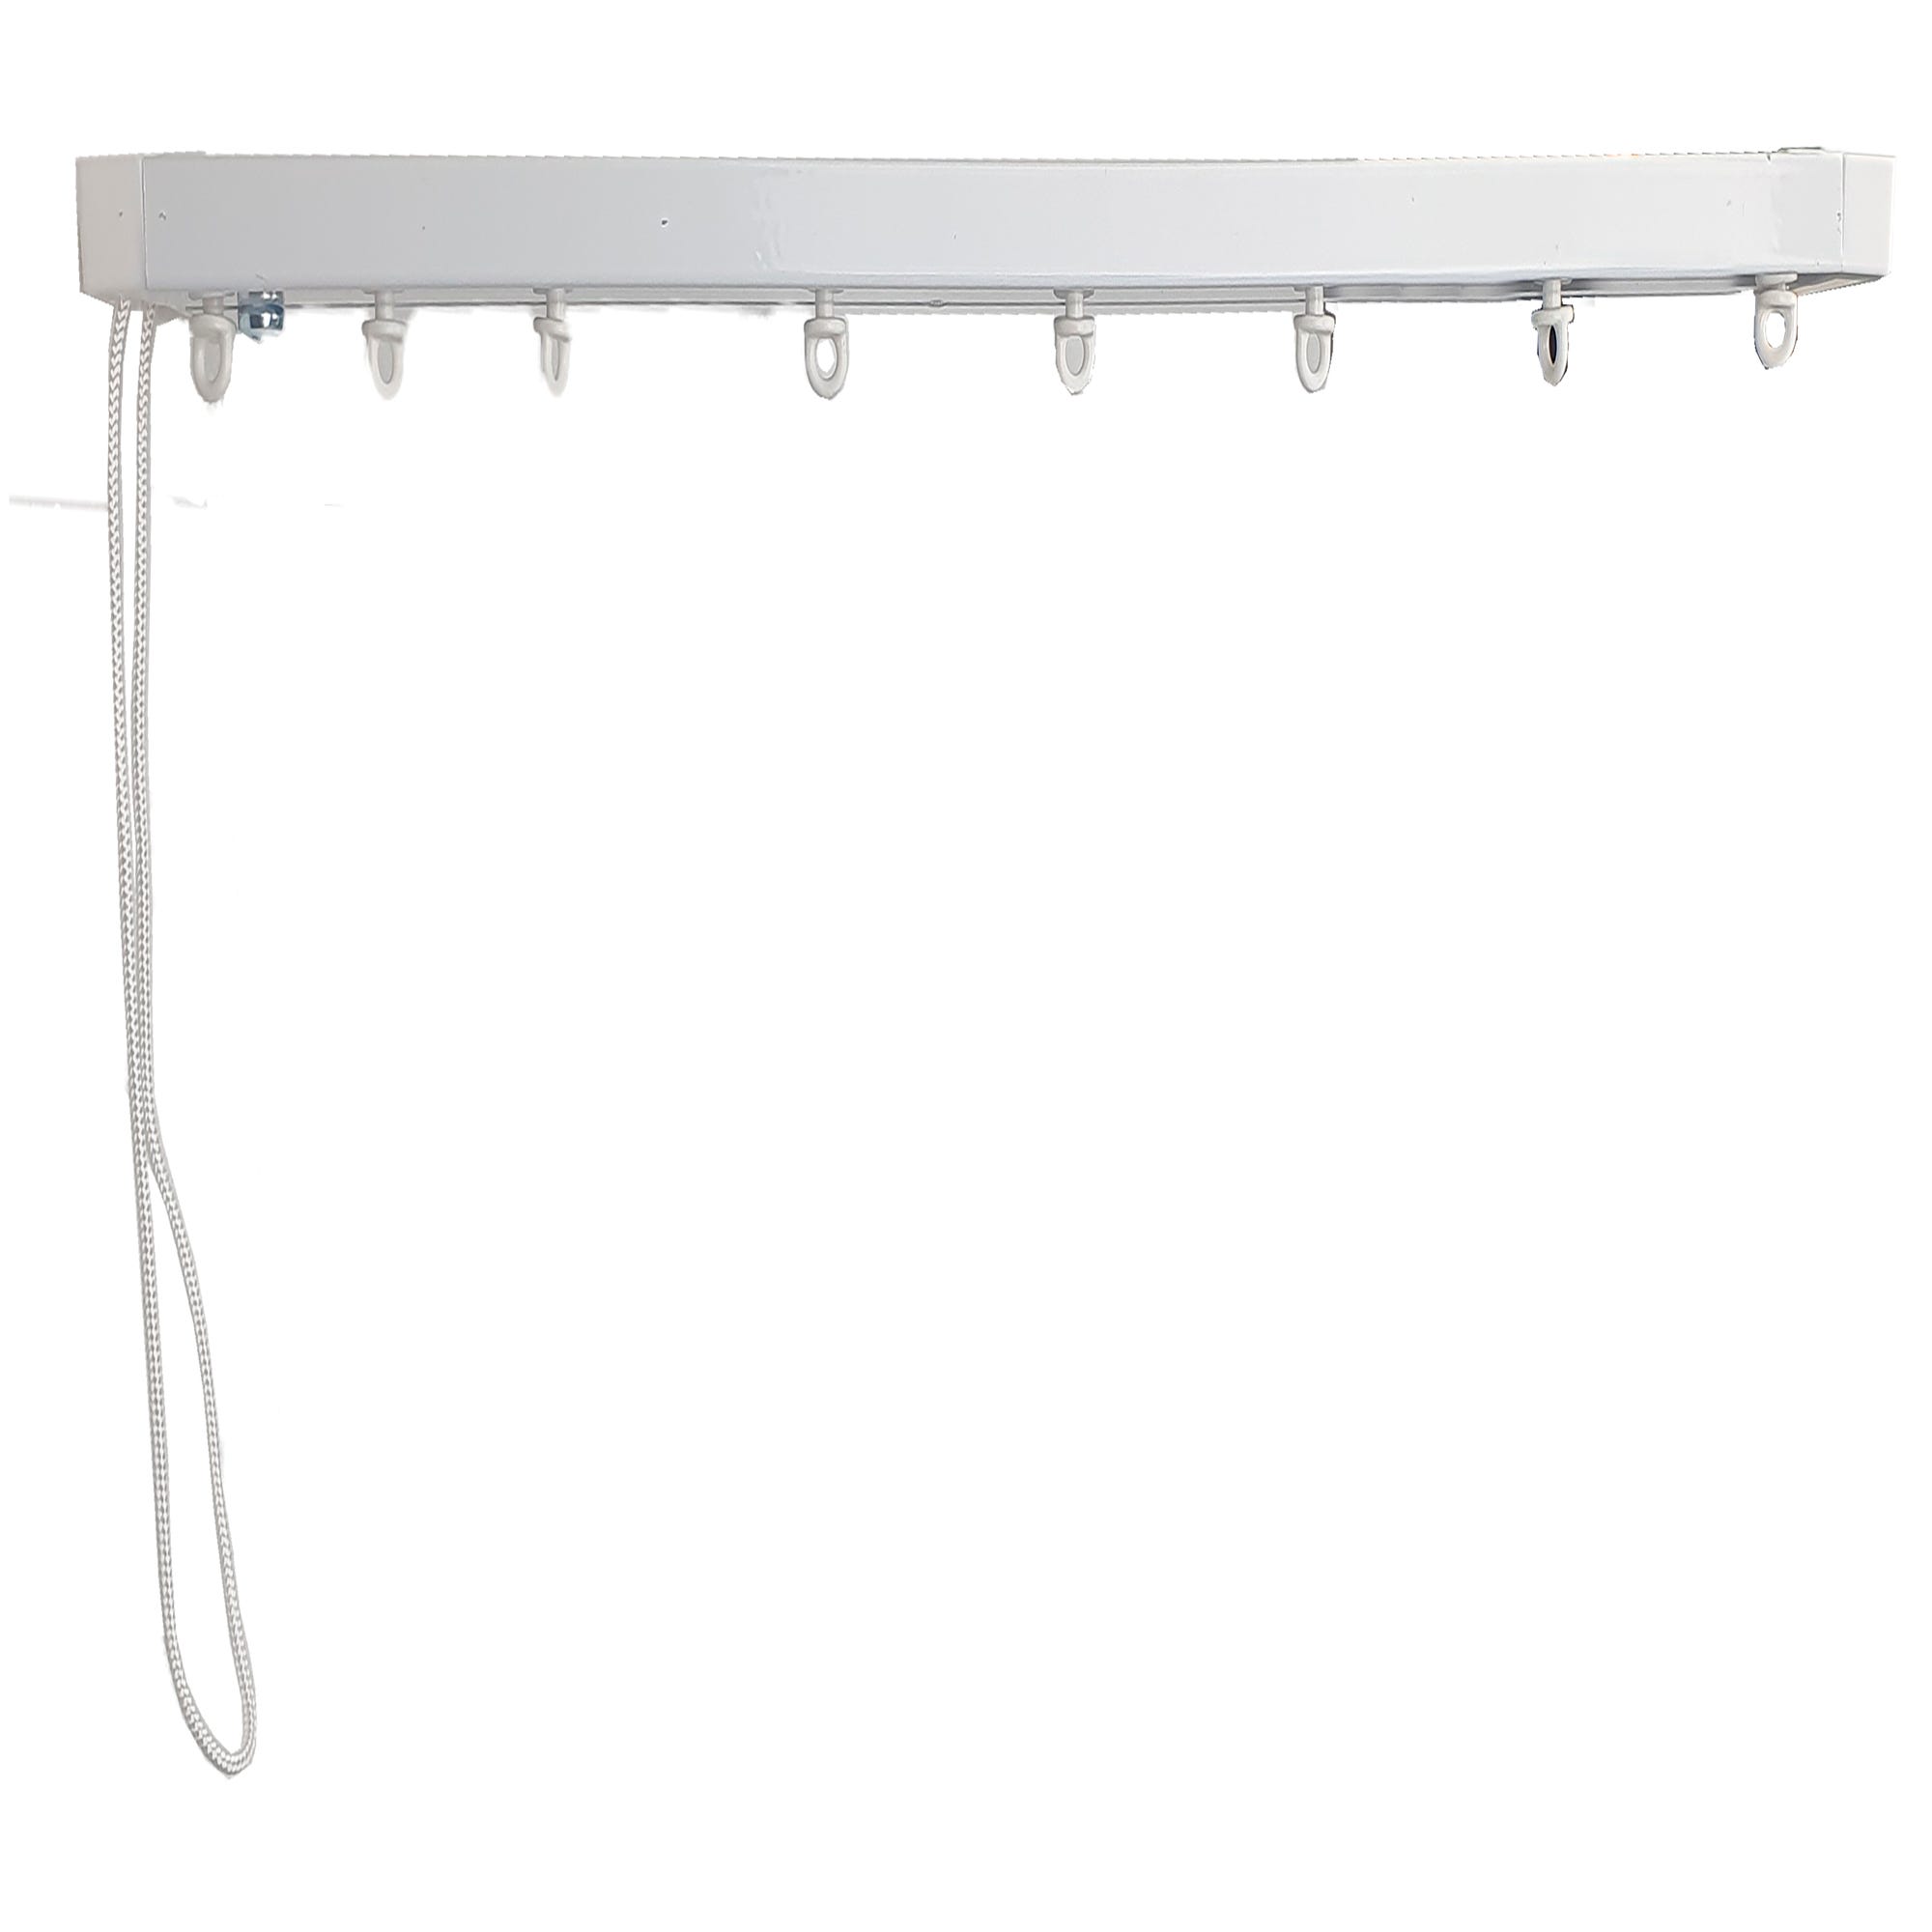 Kit de riel de cortina Deco manual Onda perfecta blanco 200 cm